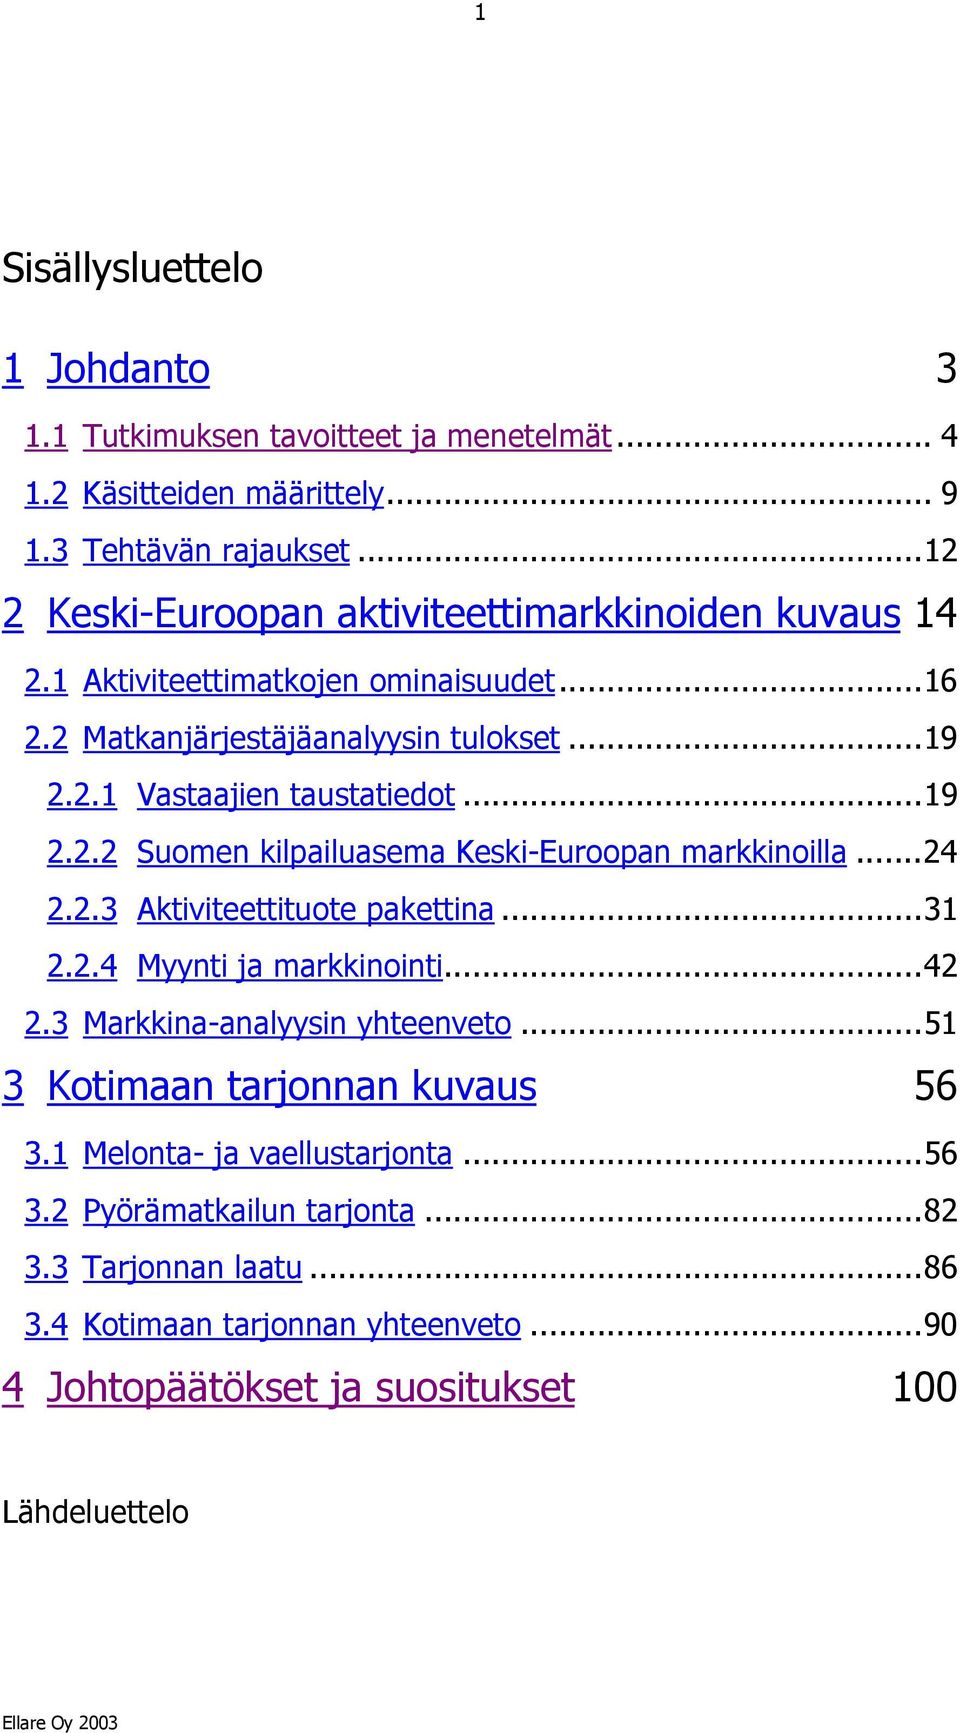 ..19 2.2.2 Suomen kilpailuasema Keski-Euroopan markkinoilla...24 2.2.3 Aktiviteettituote pakettina...31 2.2.4 Myynti ja markkinointi...42 2.3 Markkina-analyysin yhteenveto.